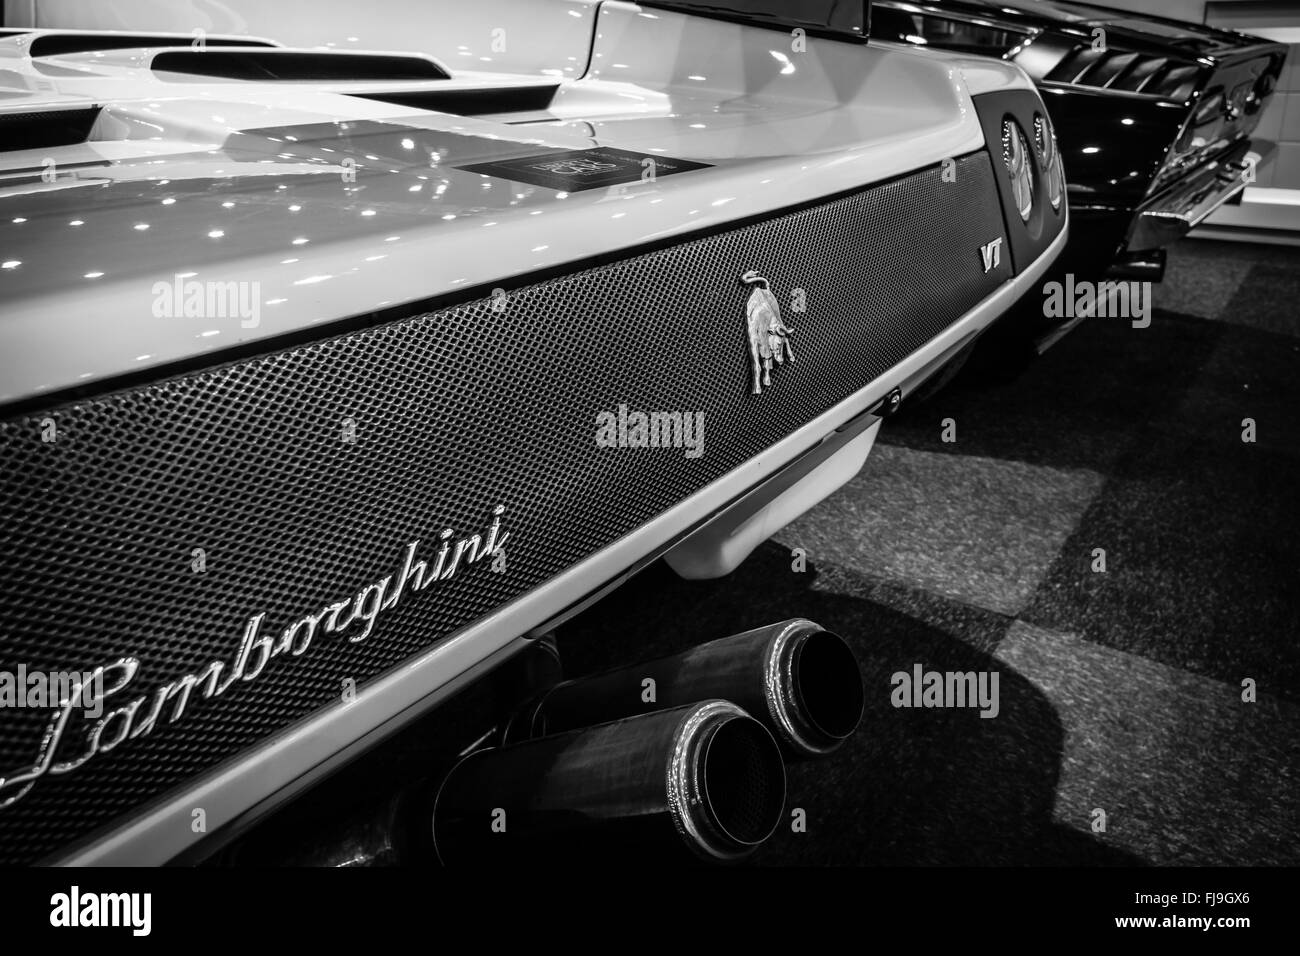 Fragment d'une voiture de sport à moteur central Lamborghini Diablo VT 6.0, 2000. Le noir et blanc Banque D'Images